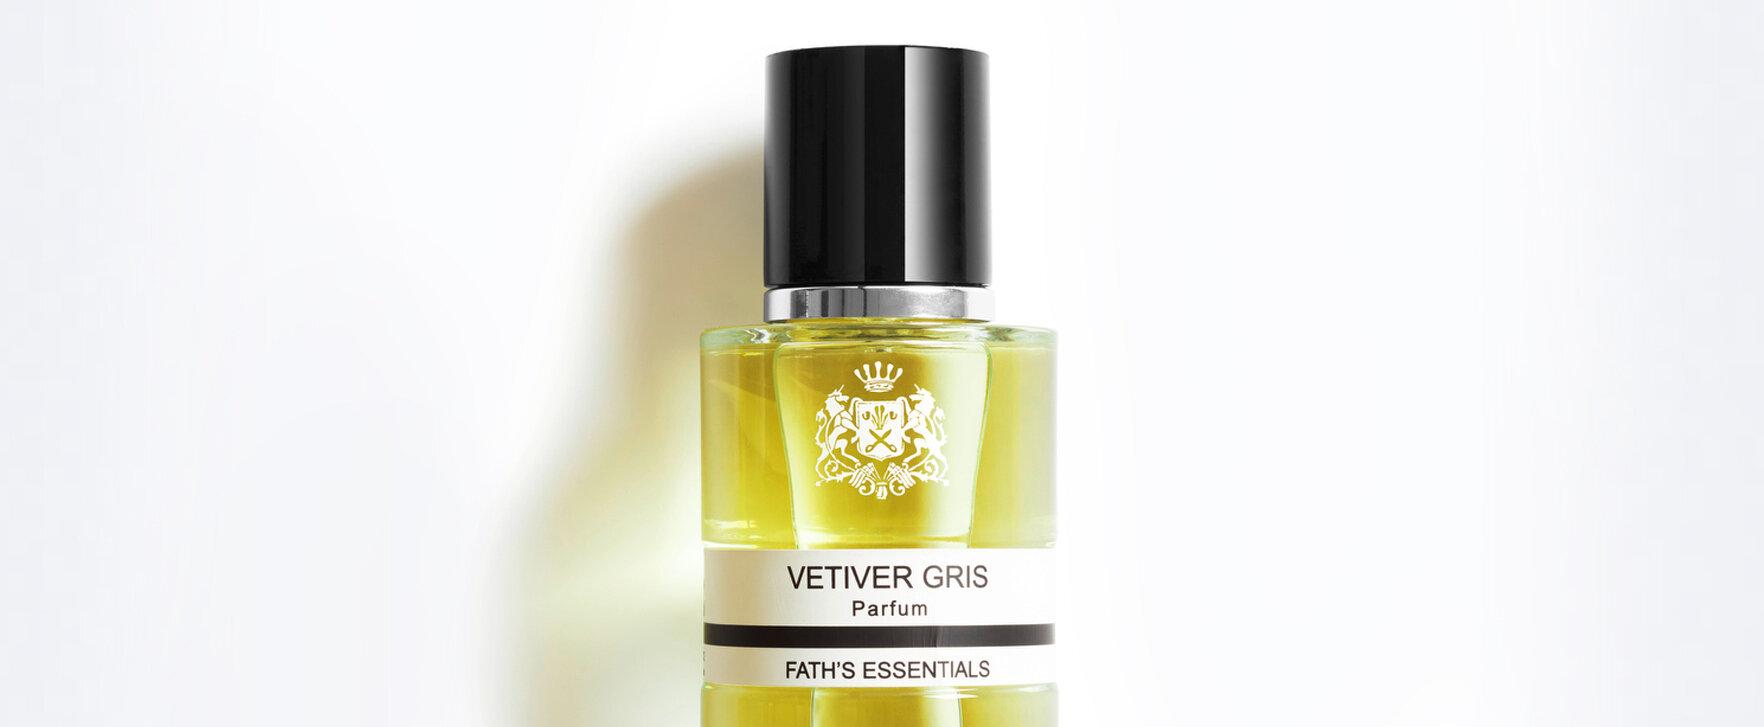 „Fath's Essentials - Vetiver Gris“: Das neue Unisexparfum mit unkonventionellen Duftnoten